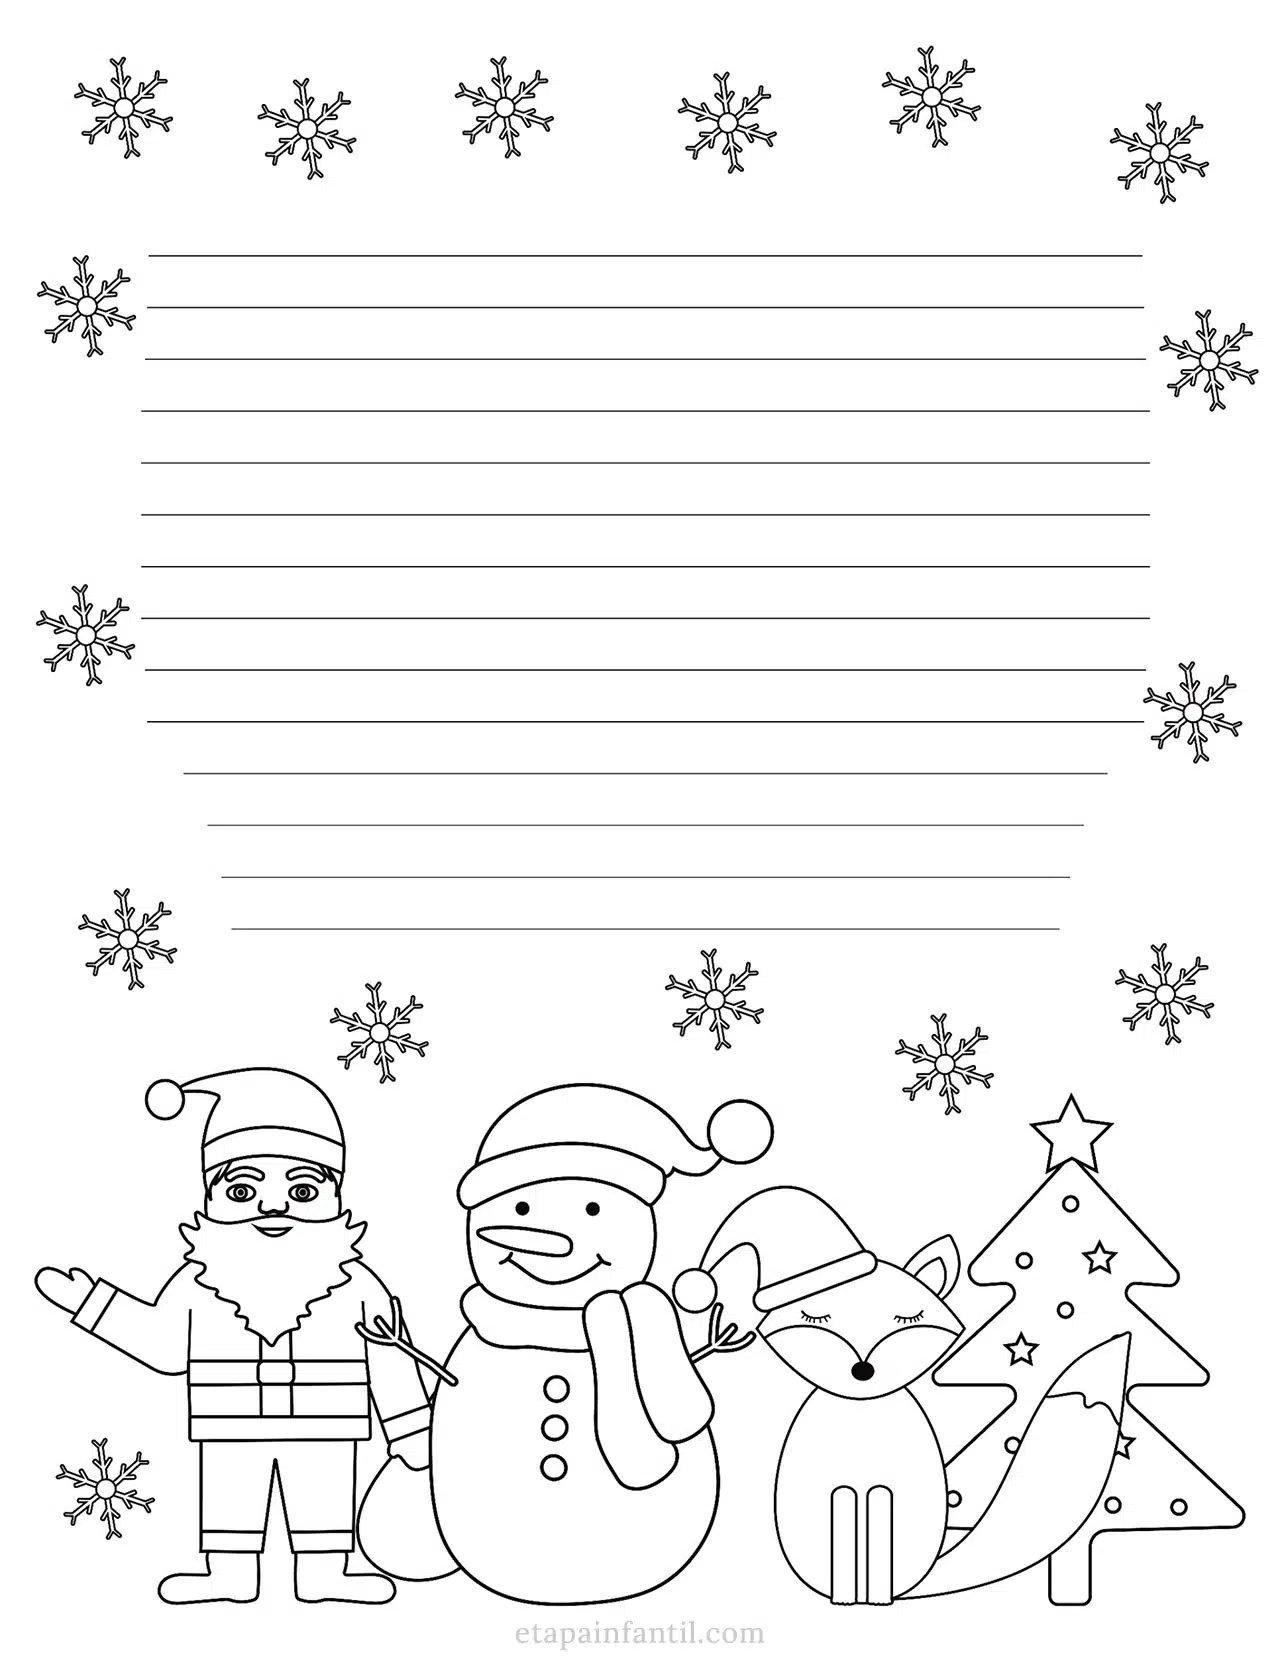 Carta navideña para Papá Noel para imprimir y colorear